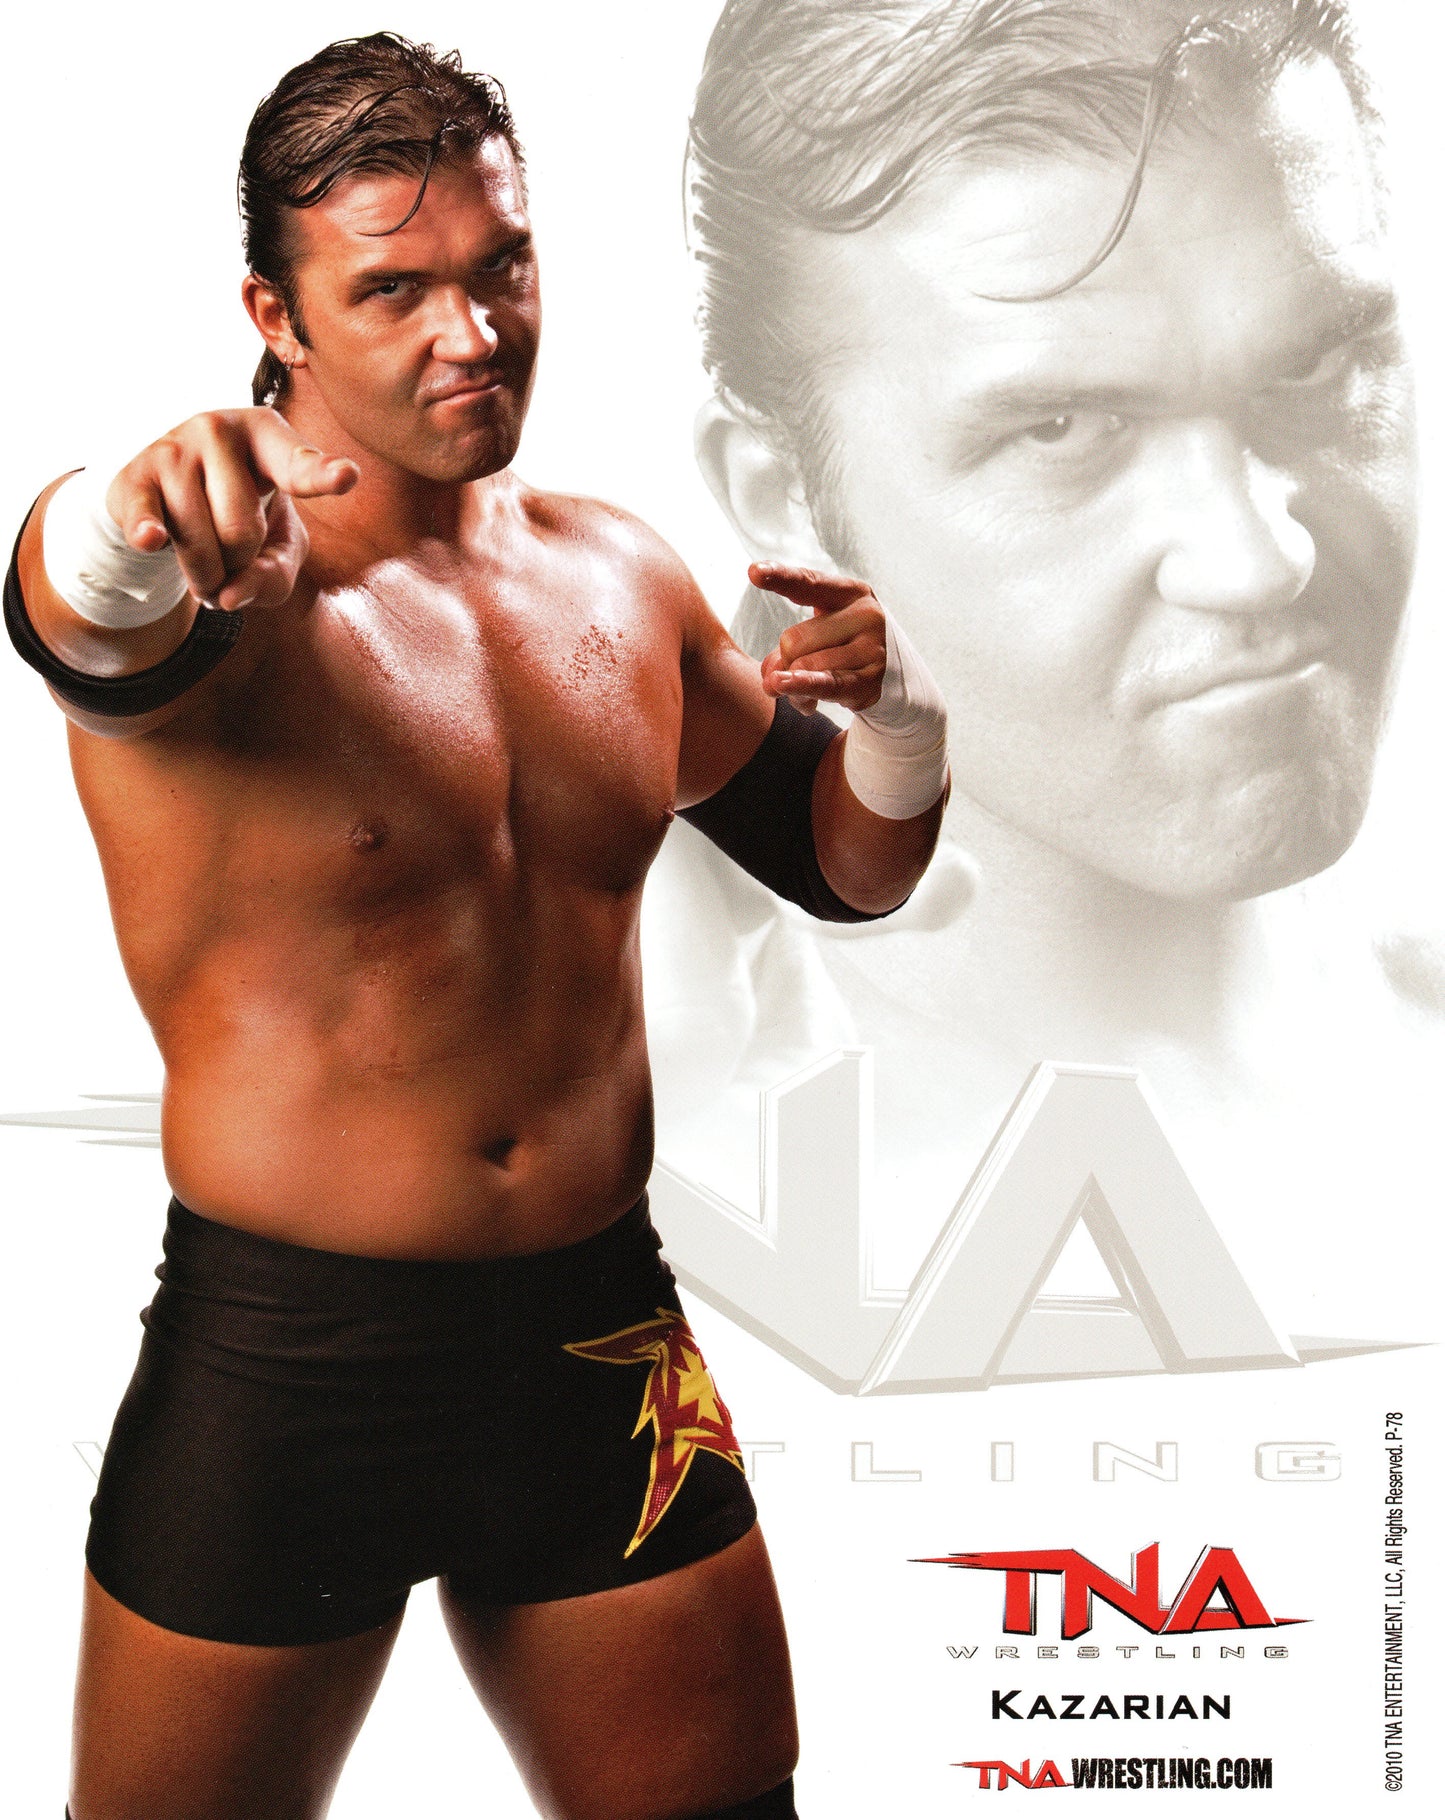 Kazarian TNA 8x10" Promo Photo P-78